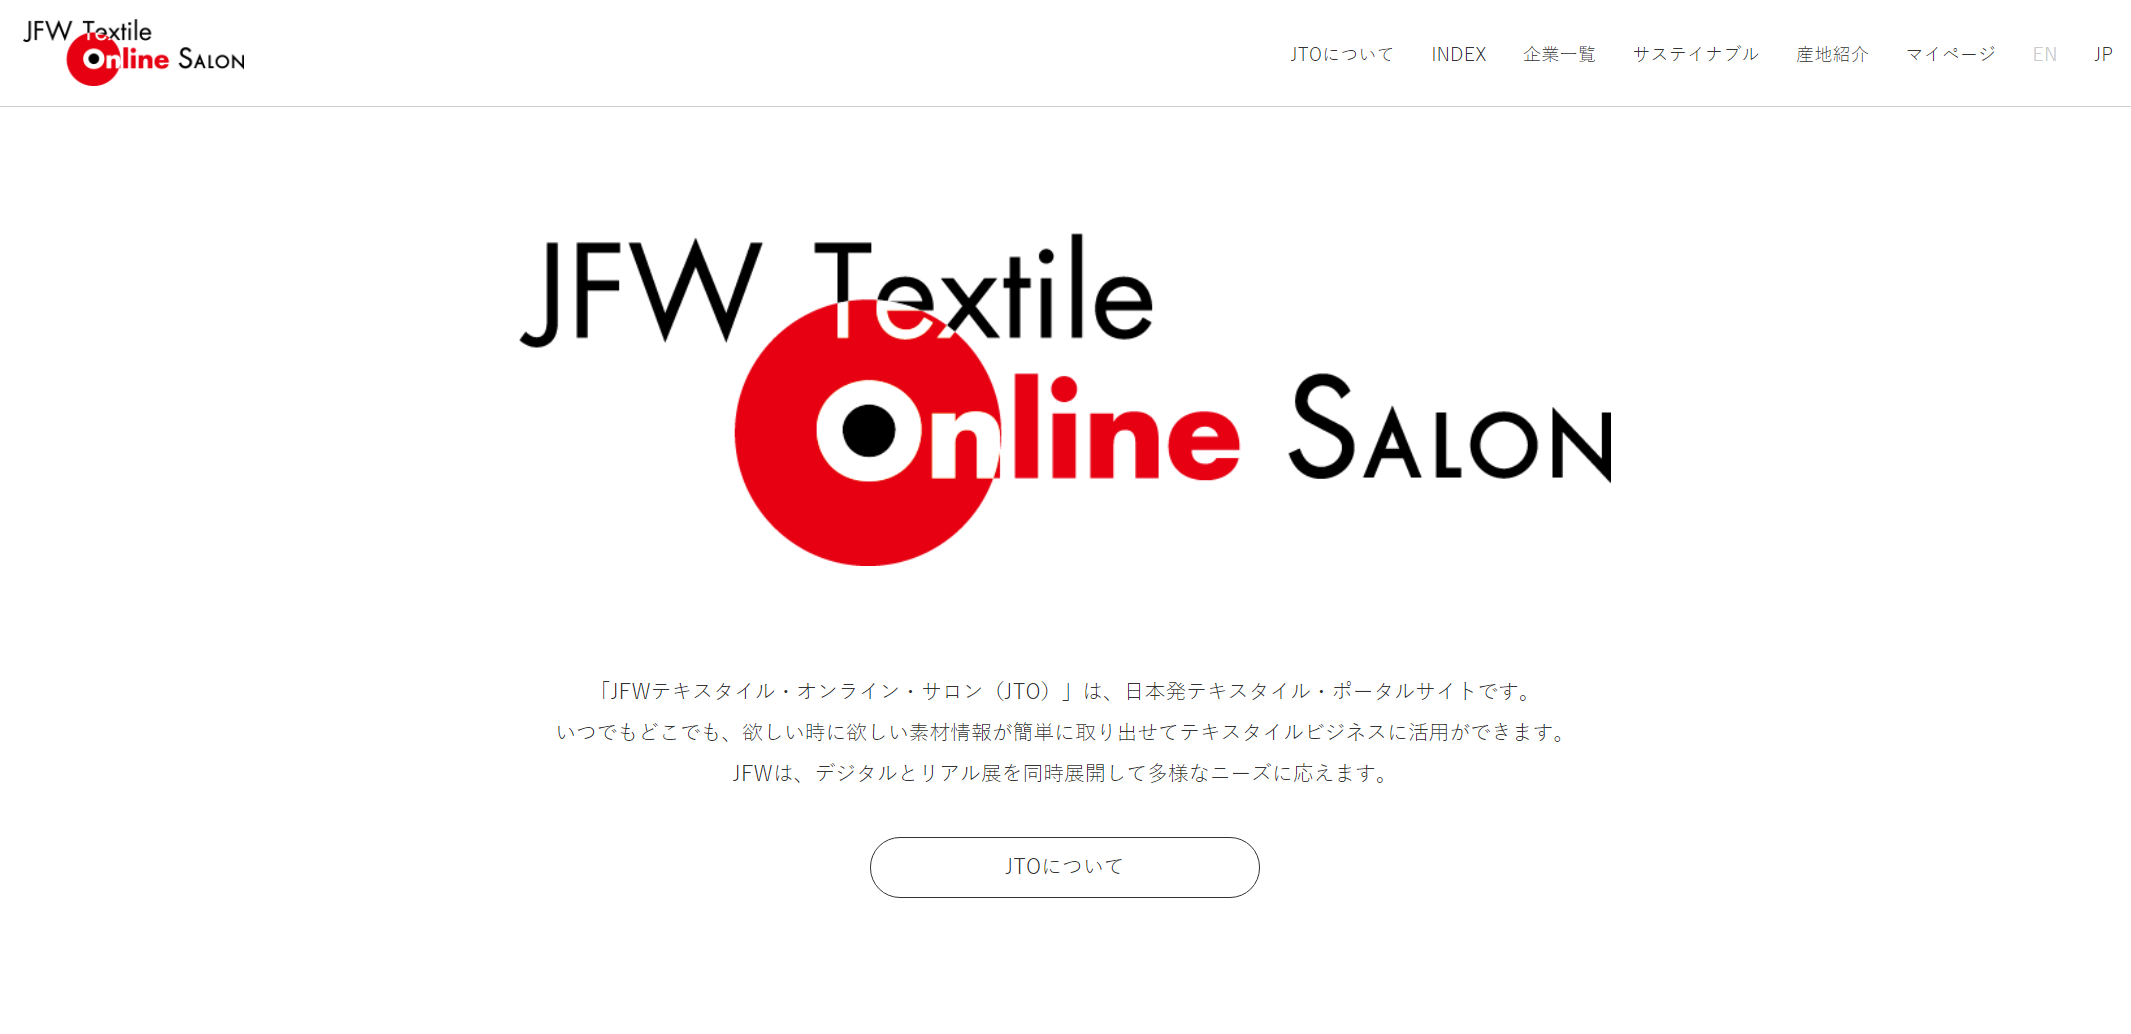 让更多人了解日本面料！东京时装周主办方 JFWO 推出面料数字平台